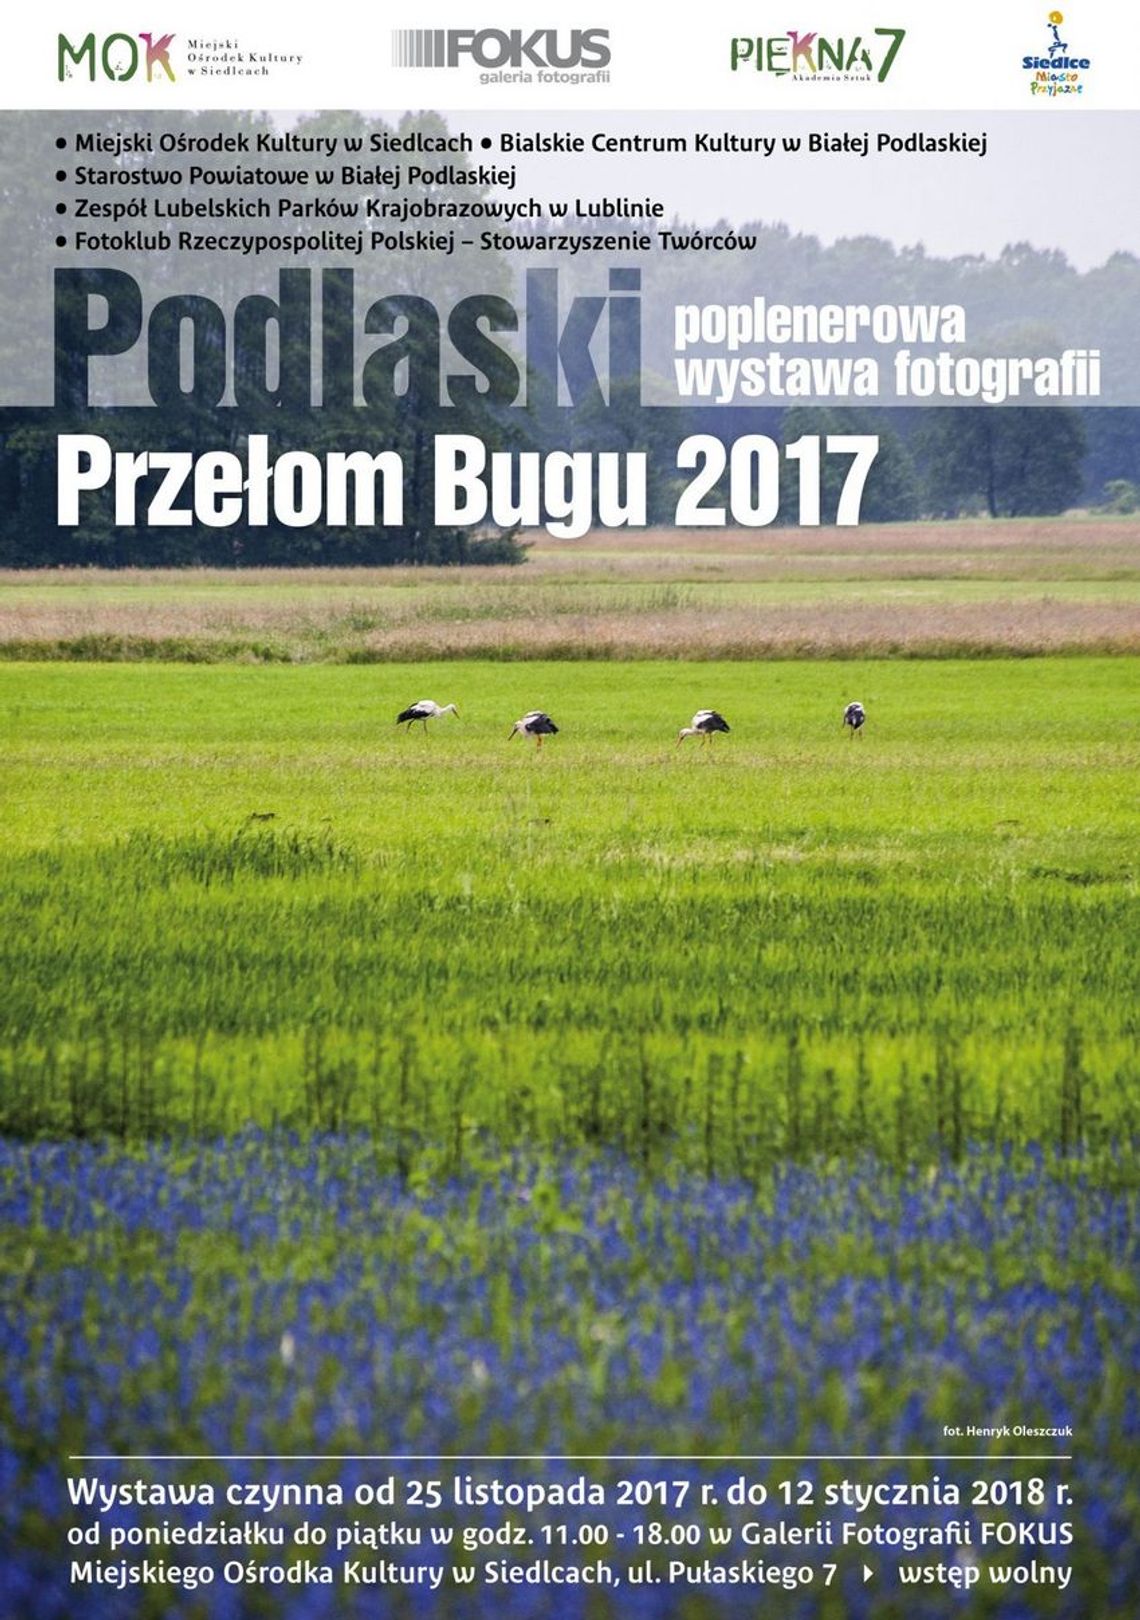 "Podlaski Przełom Bugu 2017"